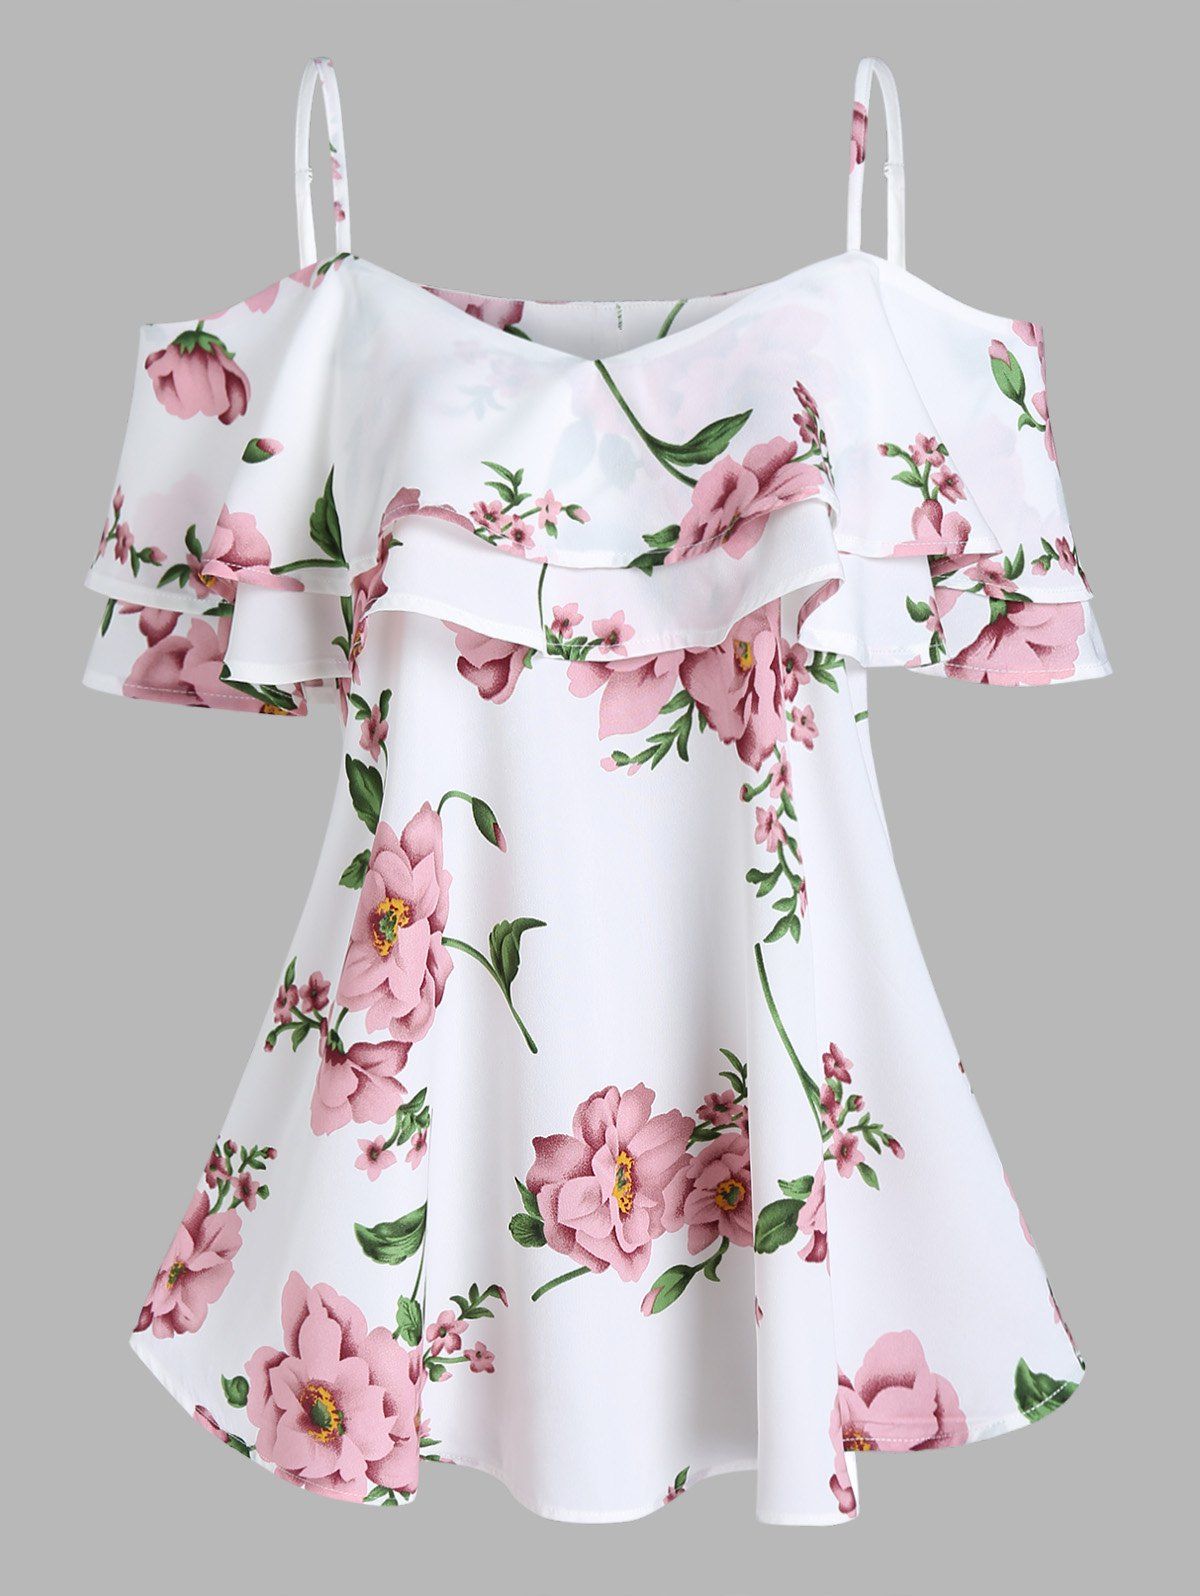 Flower Print T Shirt Cold Shoulder T-shirt Flounce Short Sleeve Summer Tee - WHITE XL